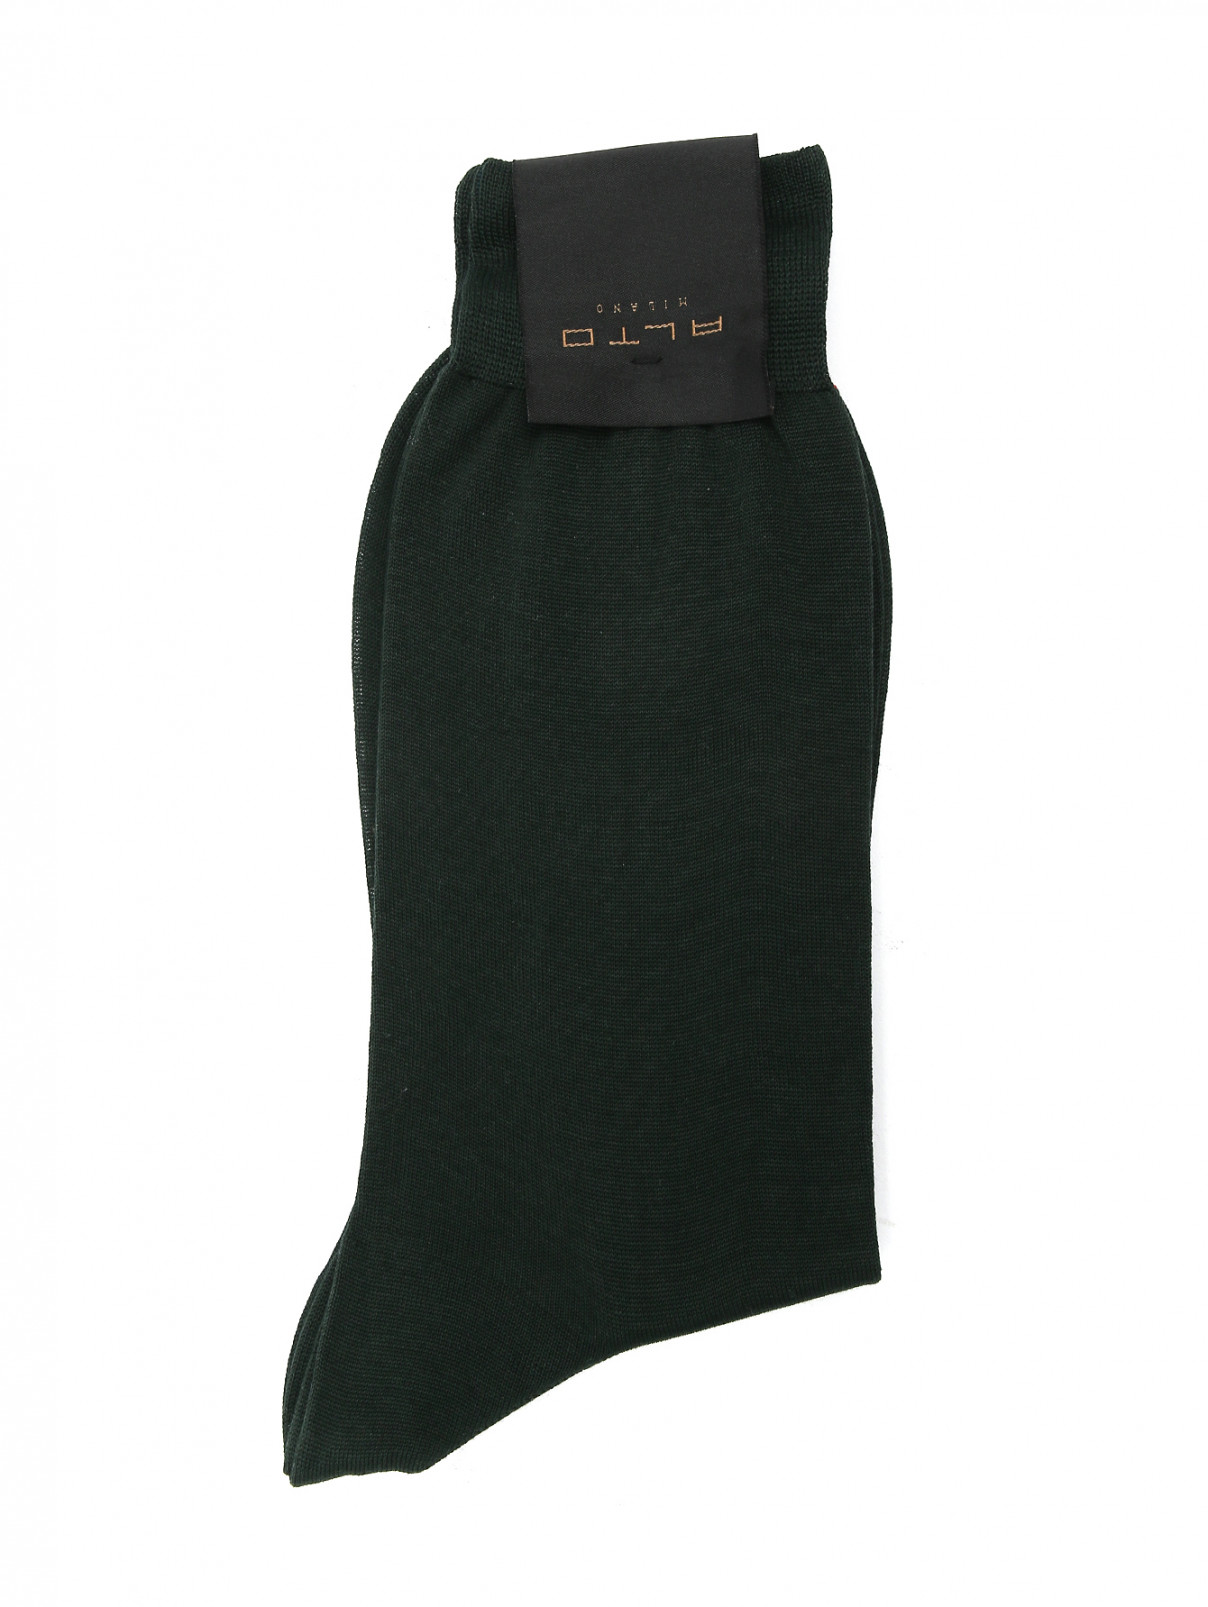 Носки из хлопка Peekaboo  –  Общий вид  – Цвет:  Зеленый